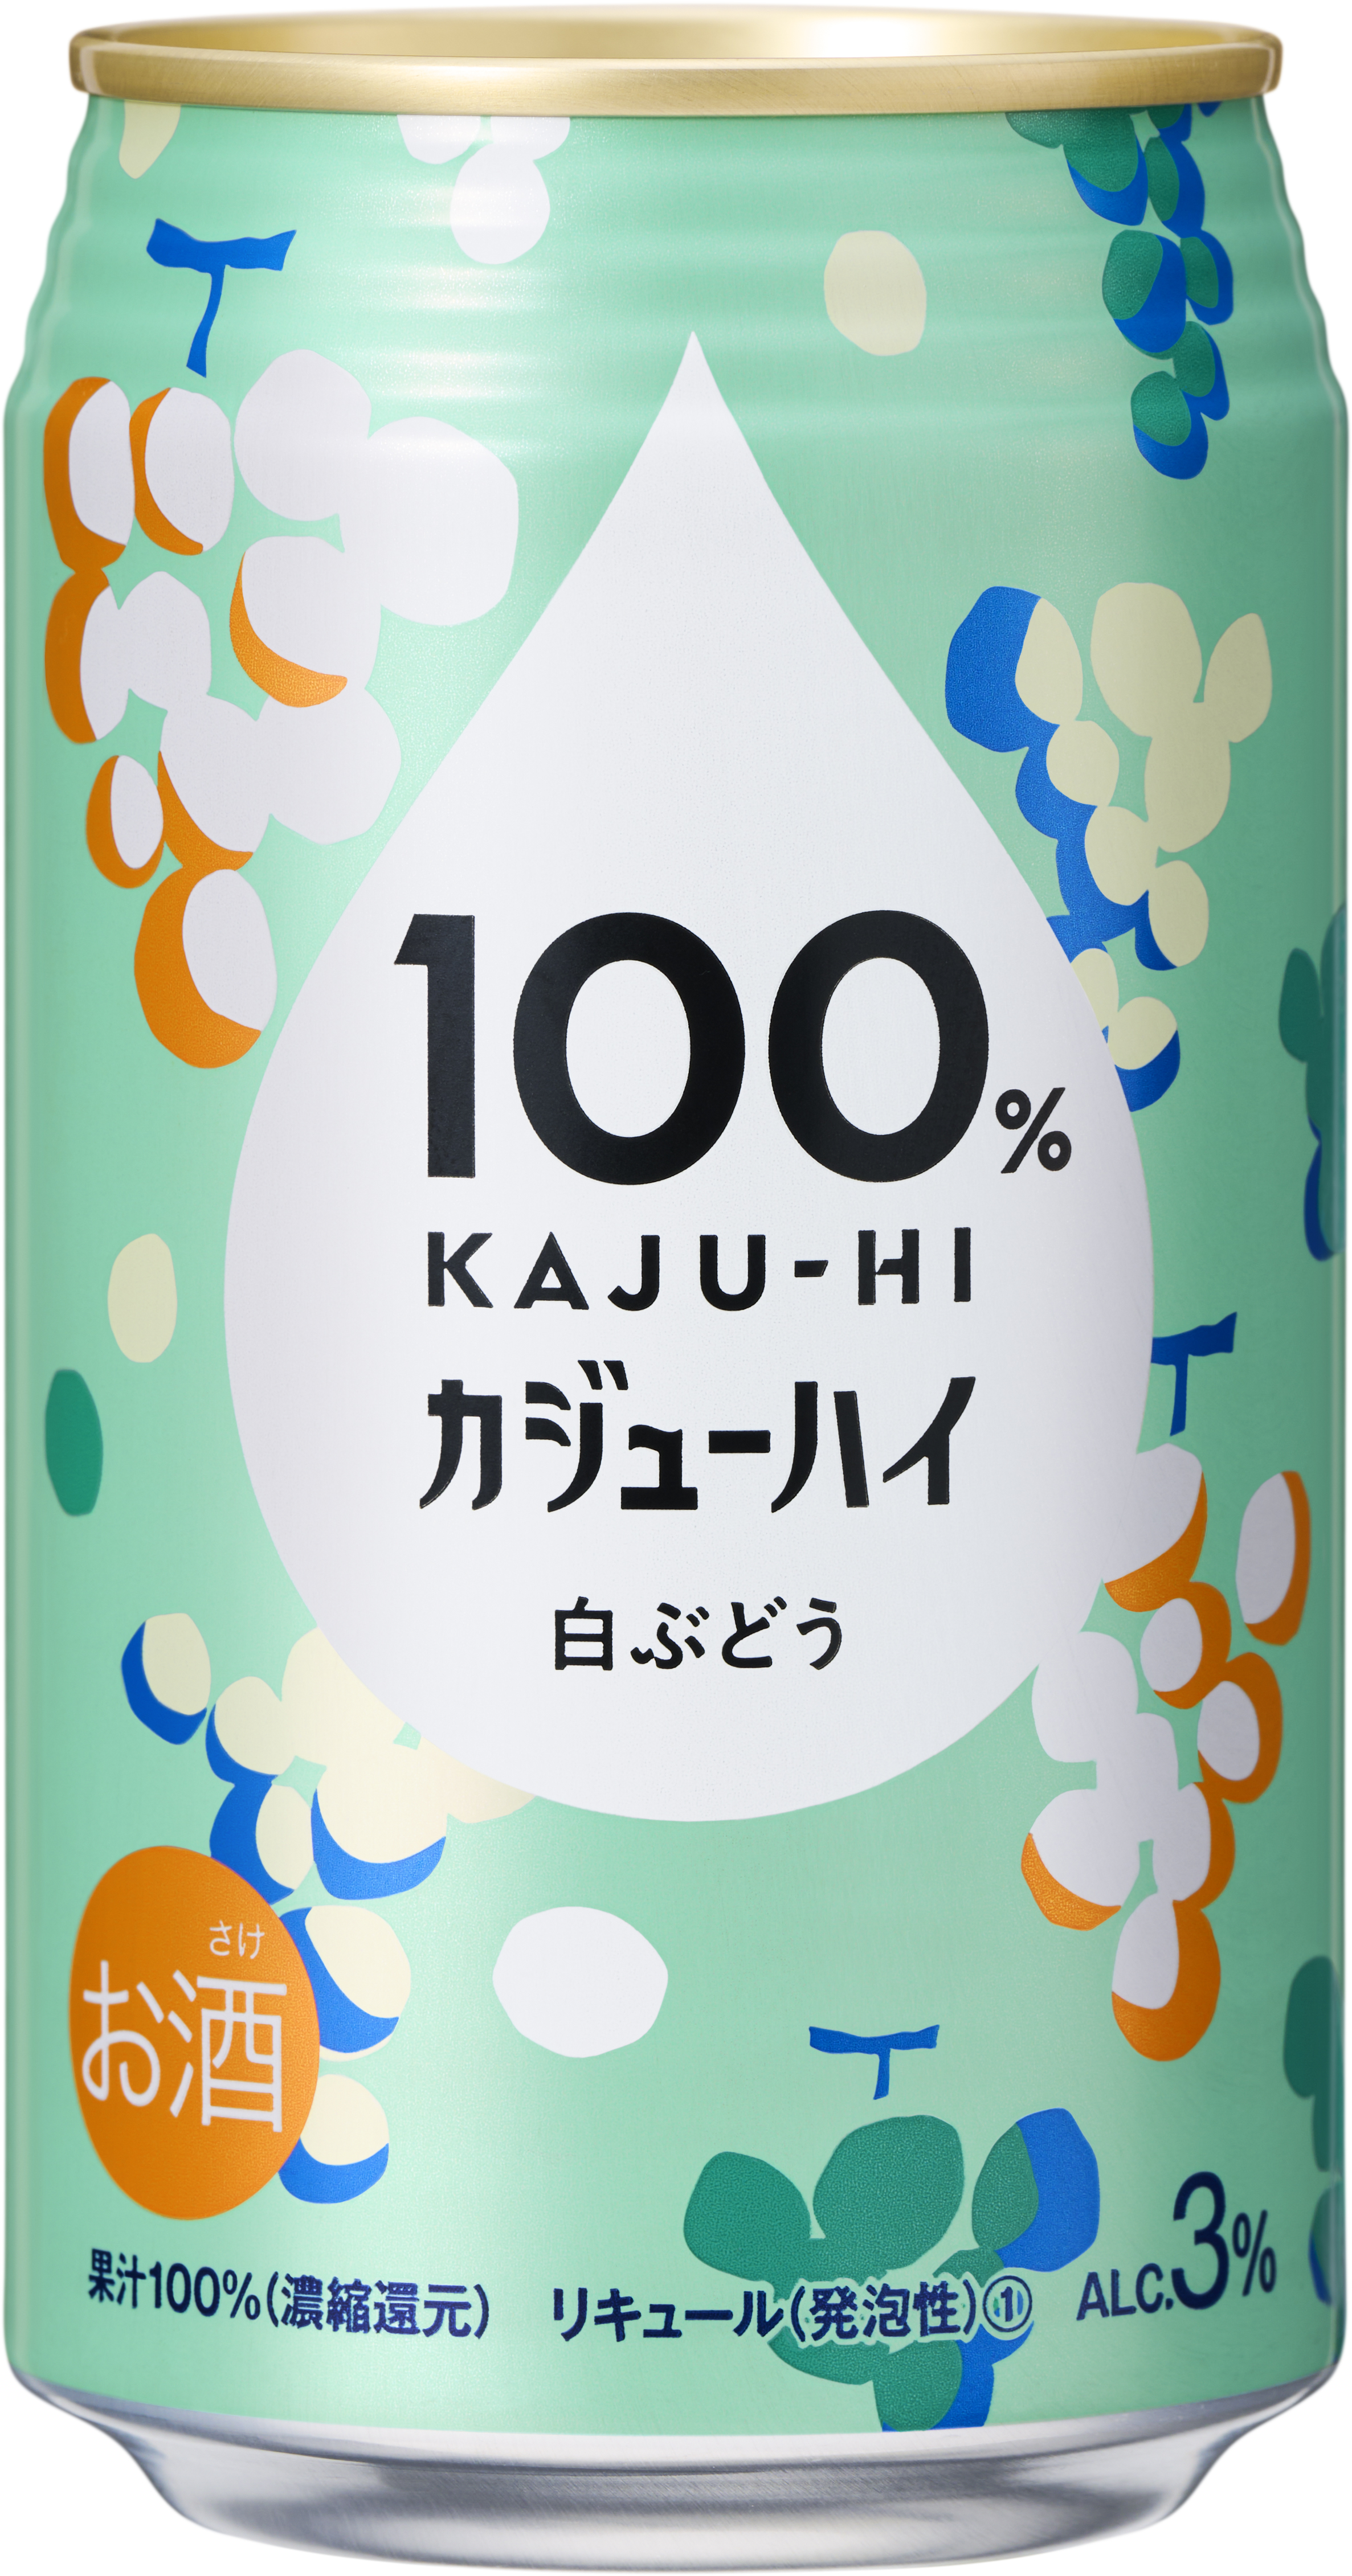 100％カジューハイ白ぶどうチューハイ缶